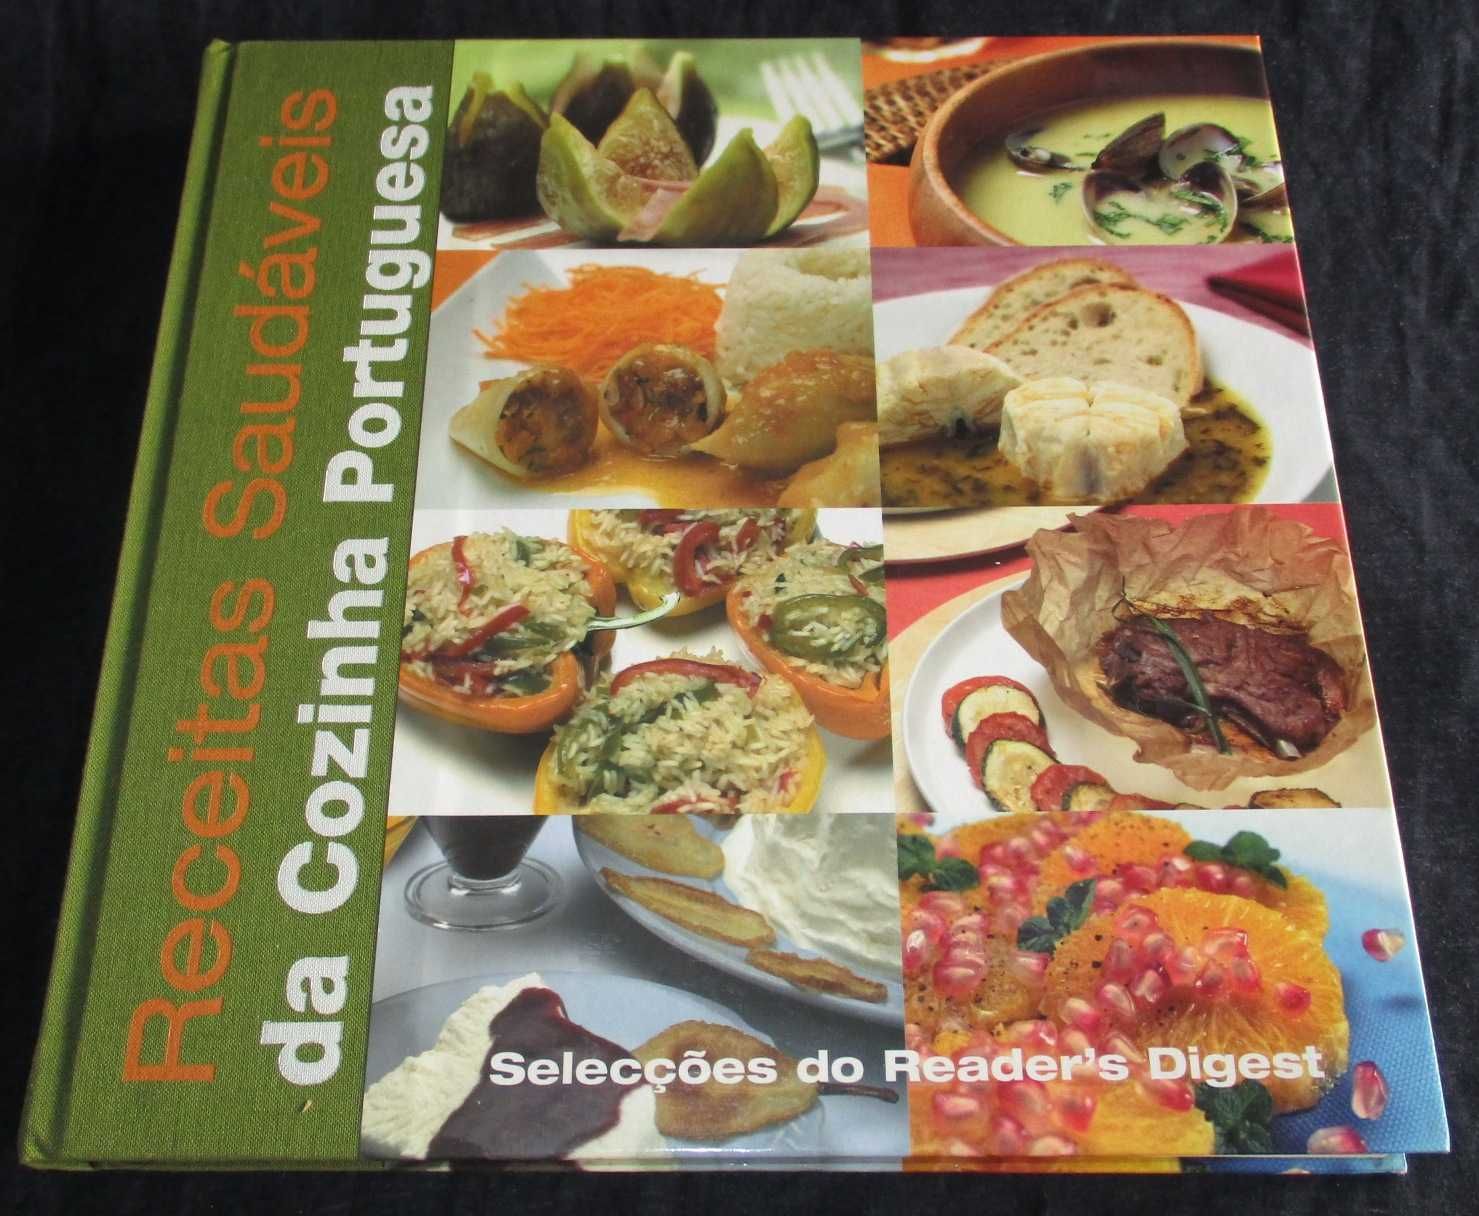 Livro Receitas Saudáveis da Cozinha Portuguesa